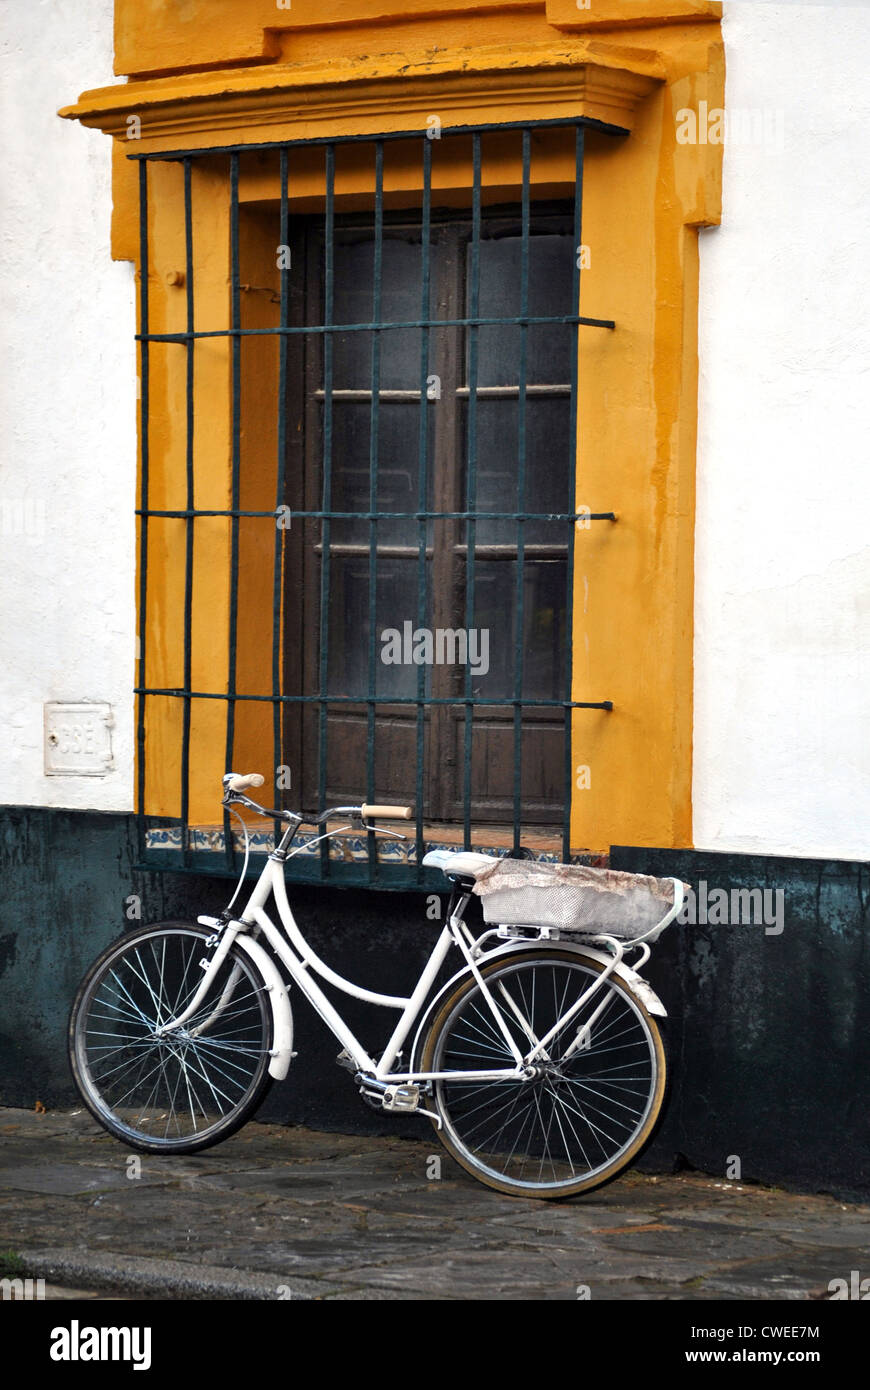 Bicycle basket to carry things in Seville, Bicicleta de paseo con cesto para llevar cosas aparcada en una calle  de Sevilla Stock Photo